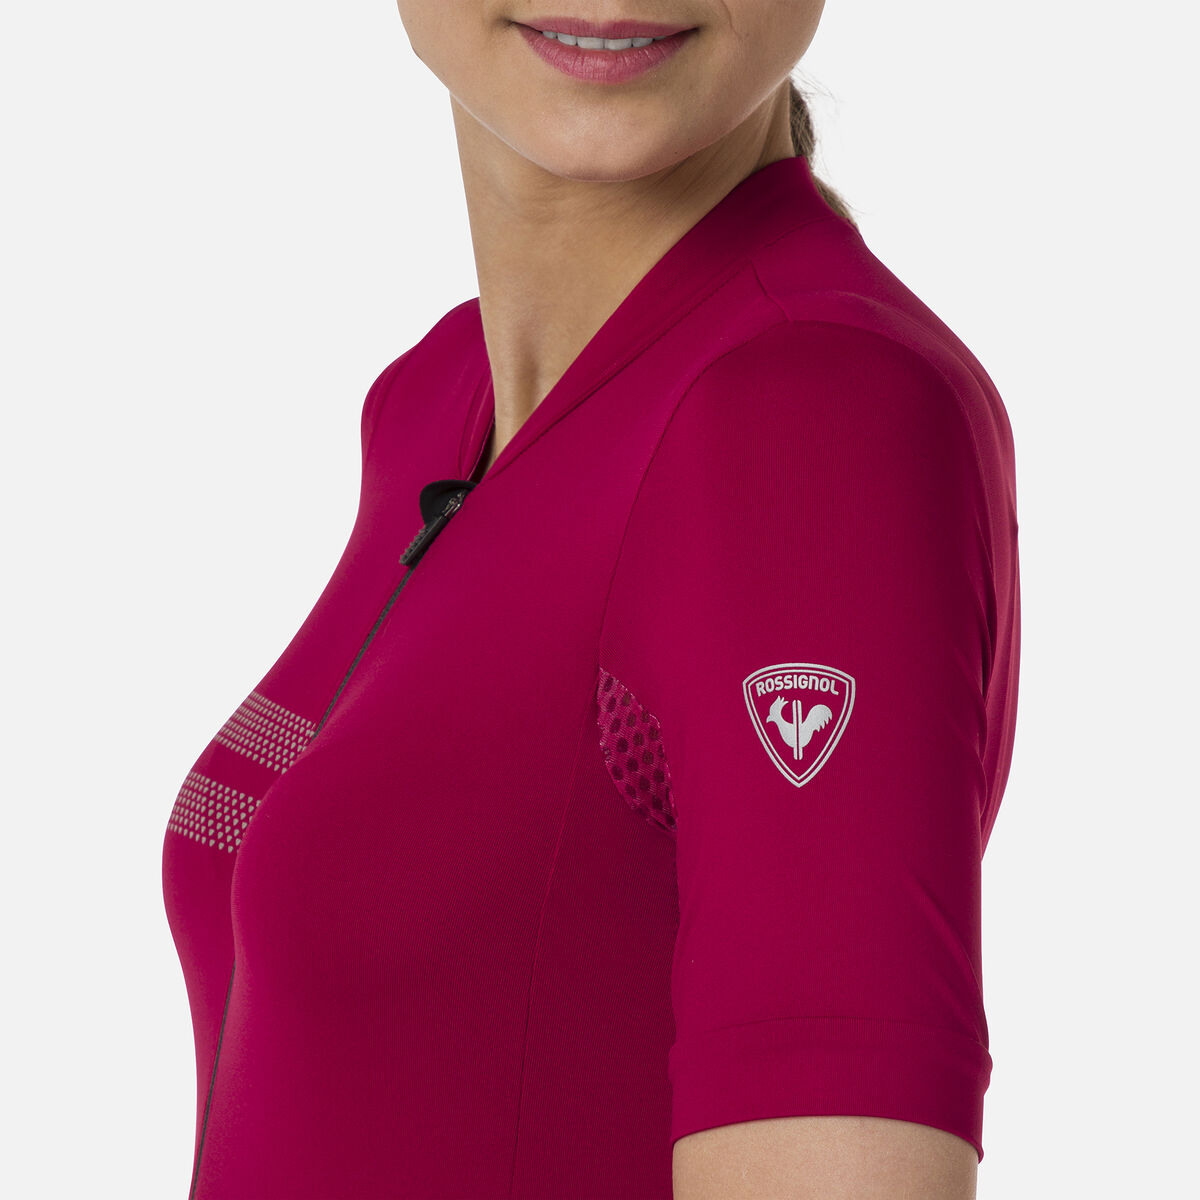 Rossignol Women's Cycling Jersey pinkpurple